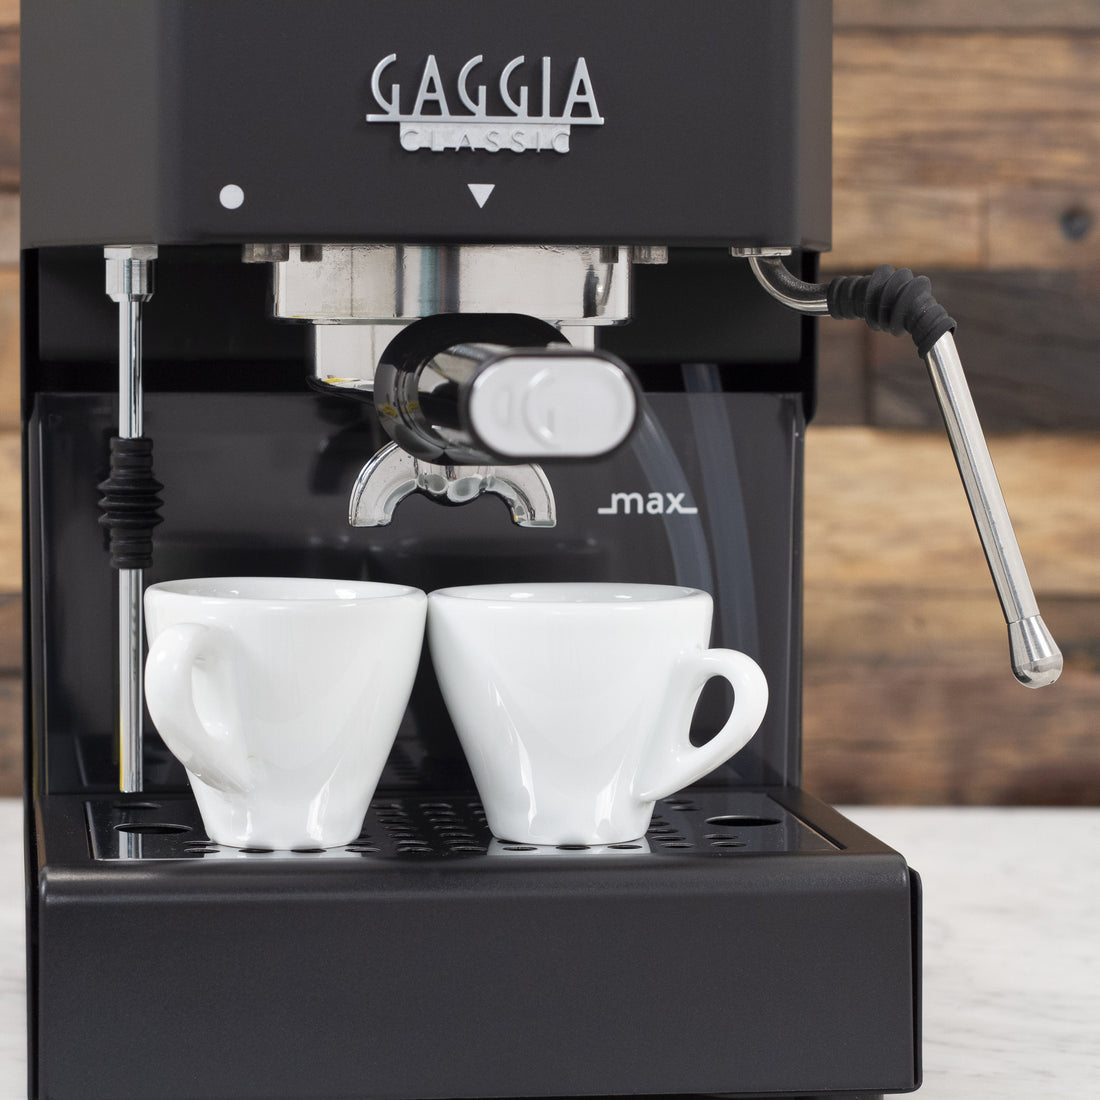 Gaggia Classic Evo Pro Espresso Machine in Thunder Black with Tiger Maple